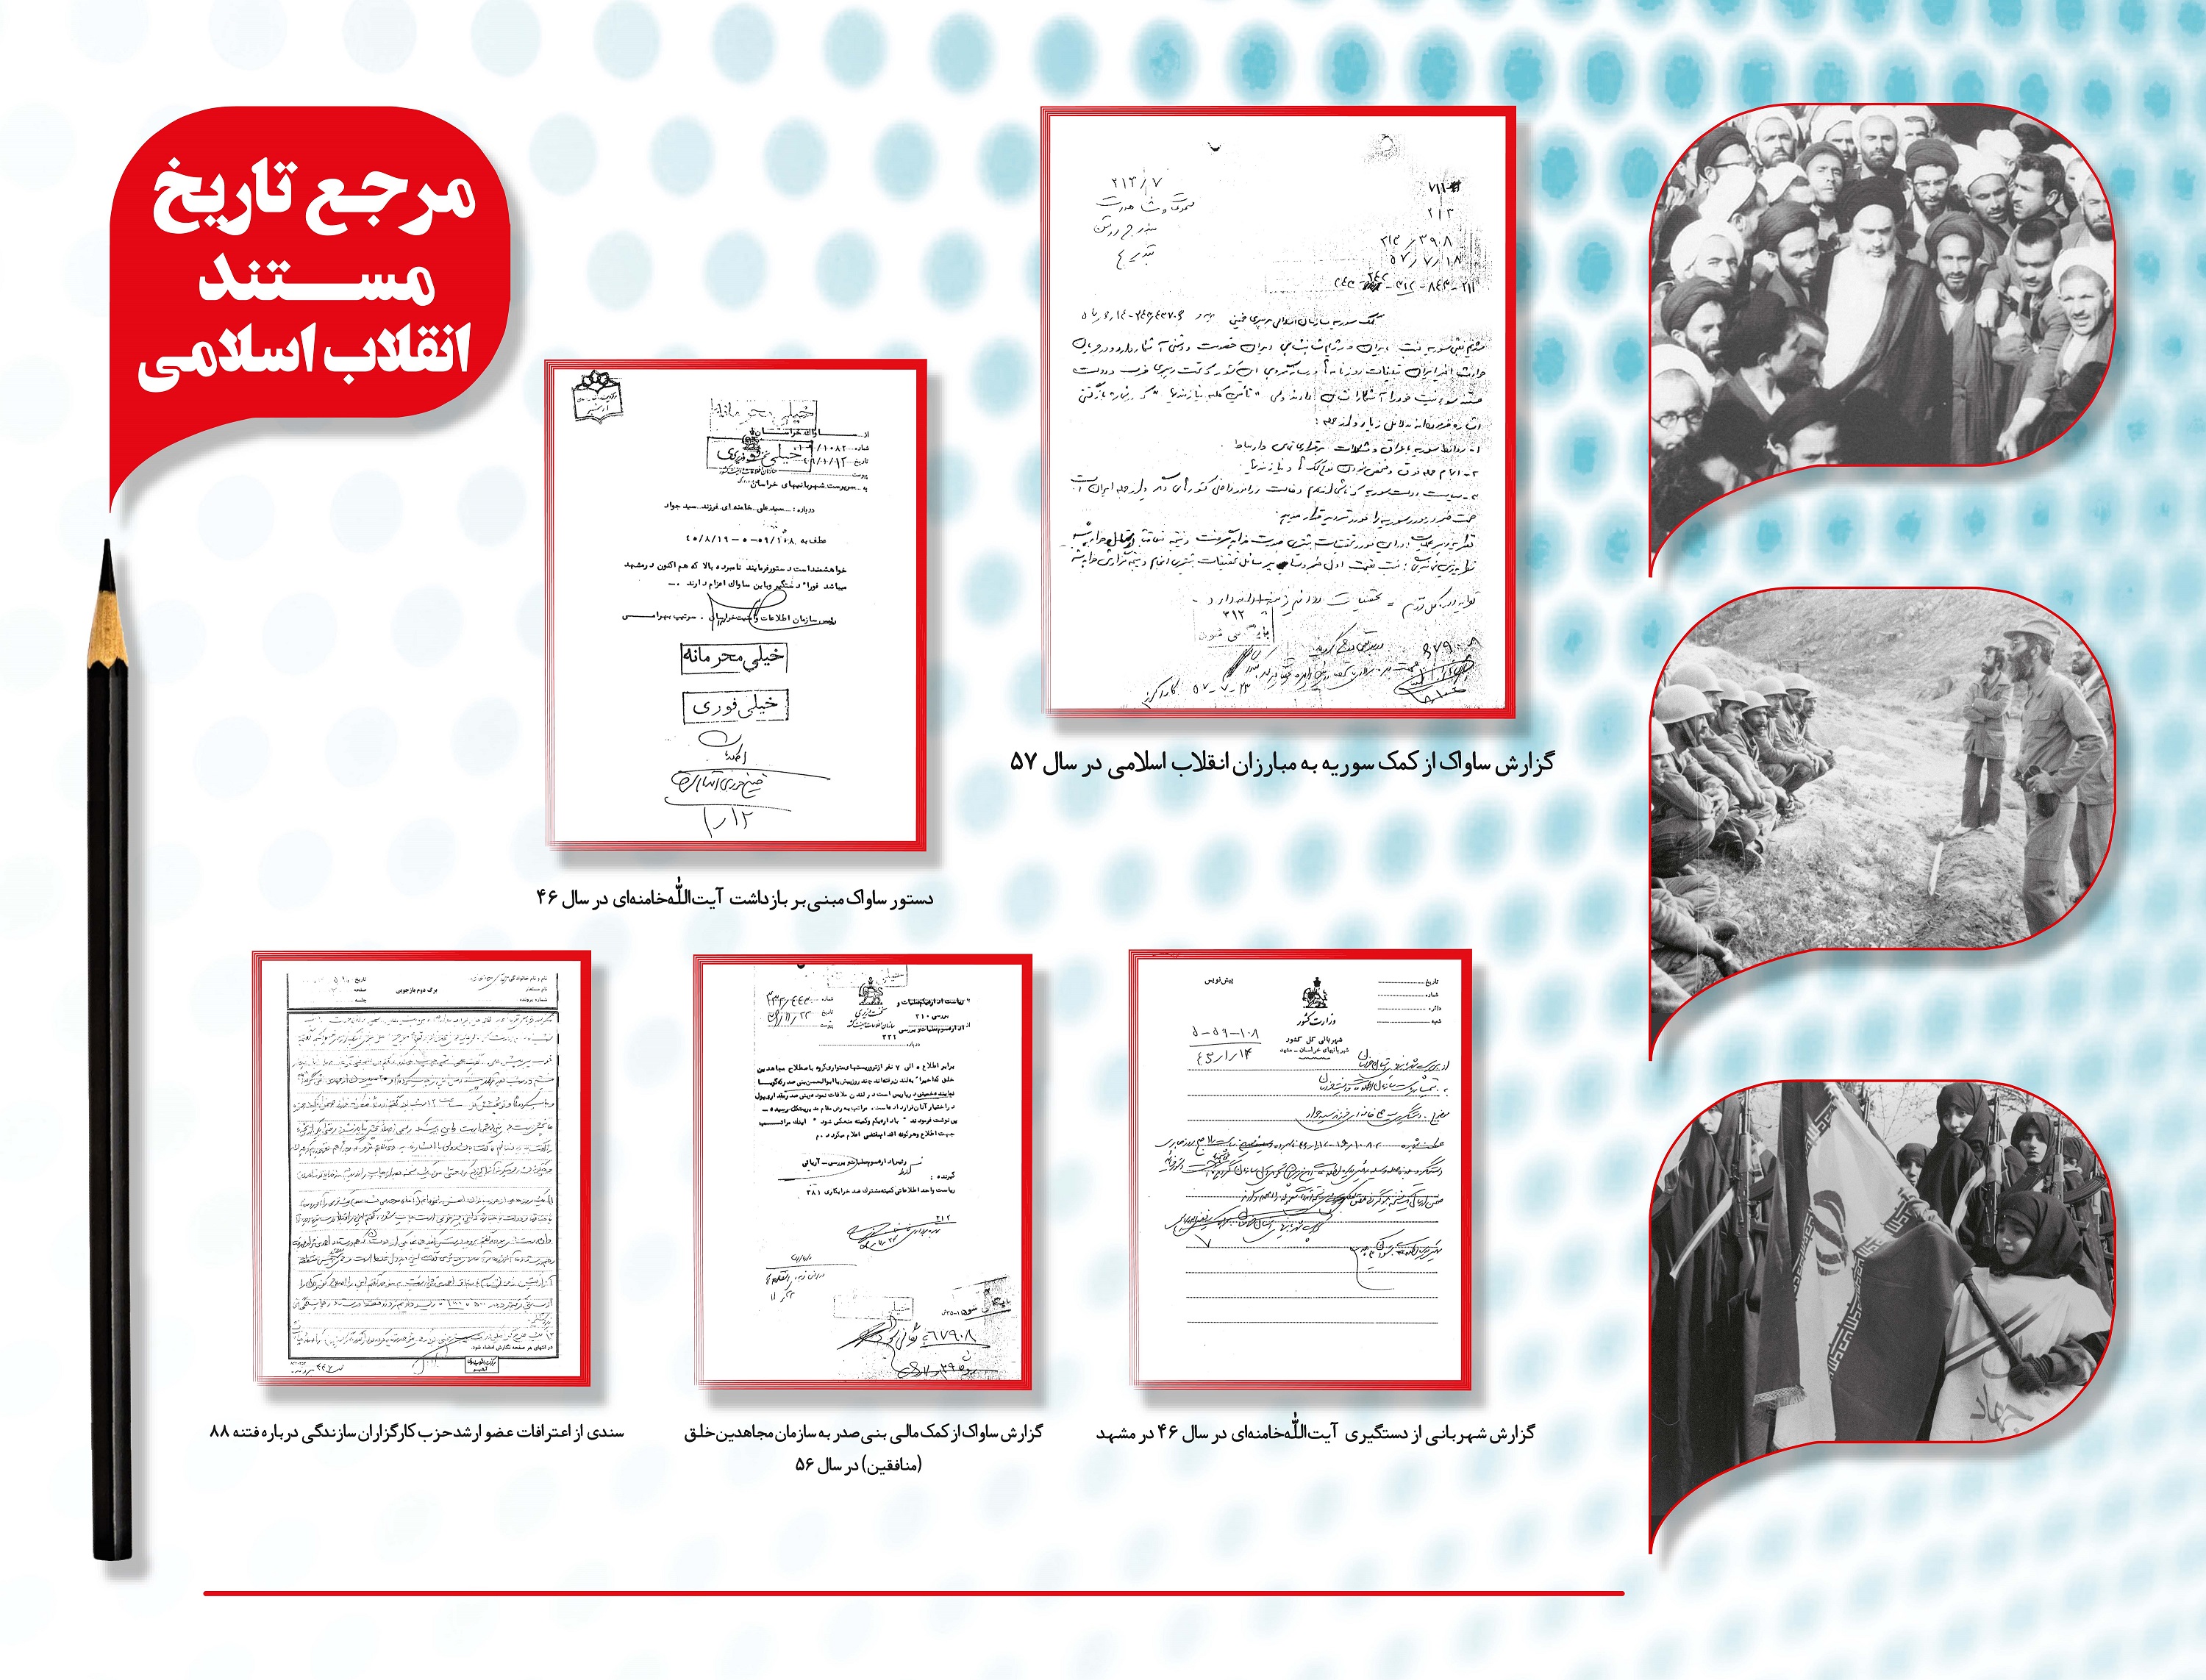 نمایش تصویر سند مهمی از کمک سوریه به ایران در سال 57 در غرفه پایگاه مرکز اسناد انقلاب اسلامی در نمایشگاه مطبوعات